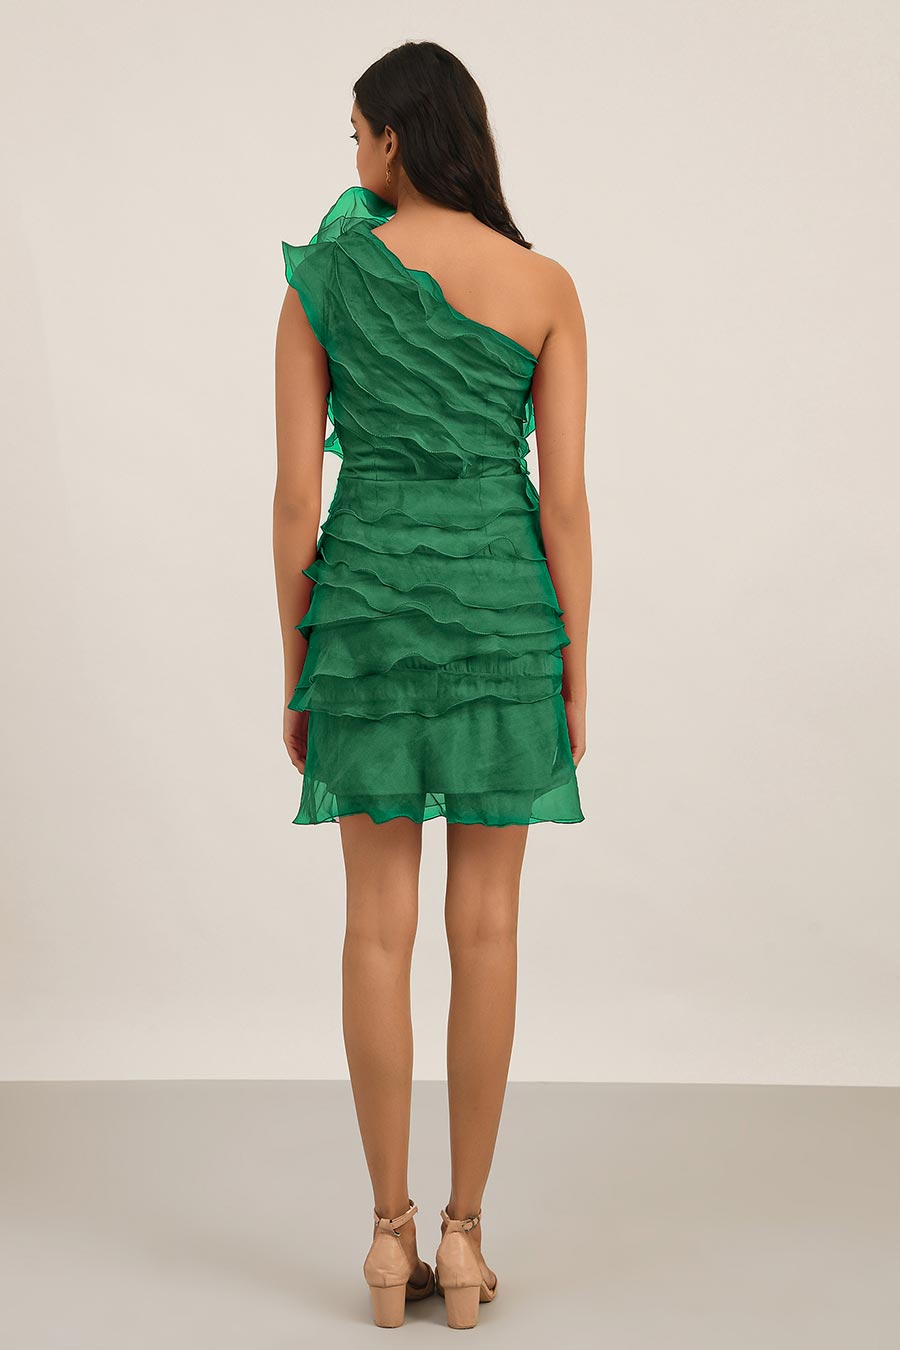 Green Multi Tier Ruffle Dress